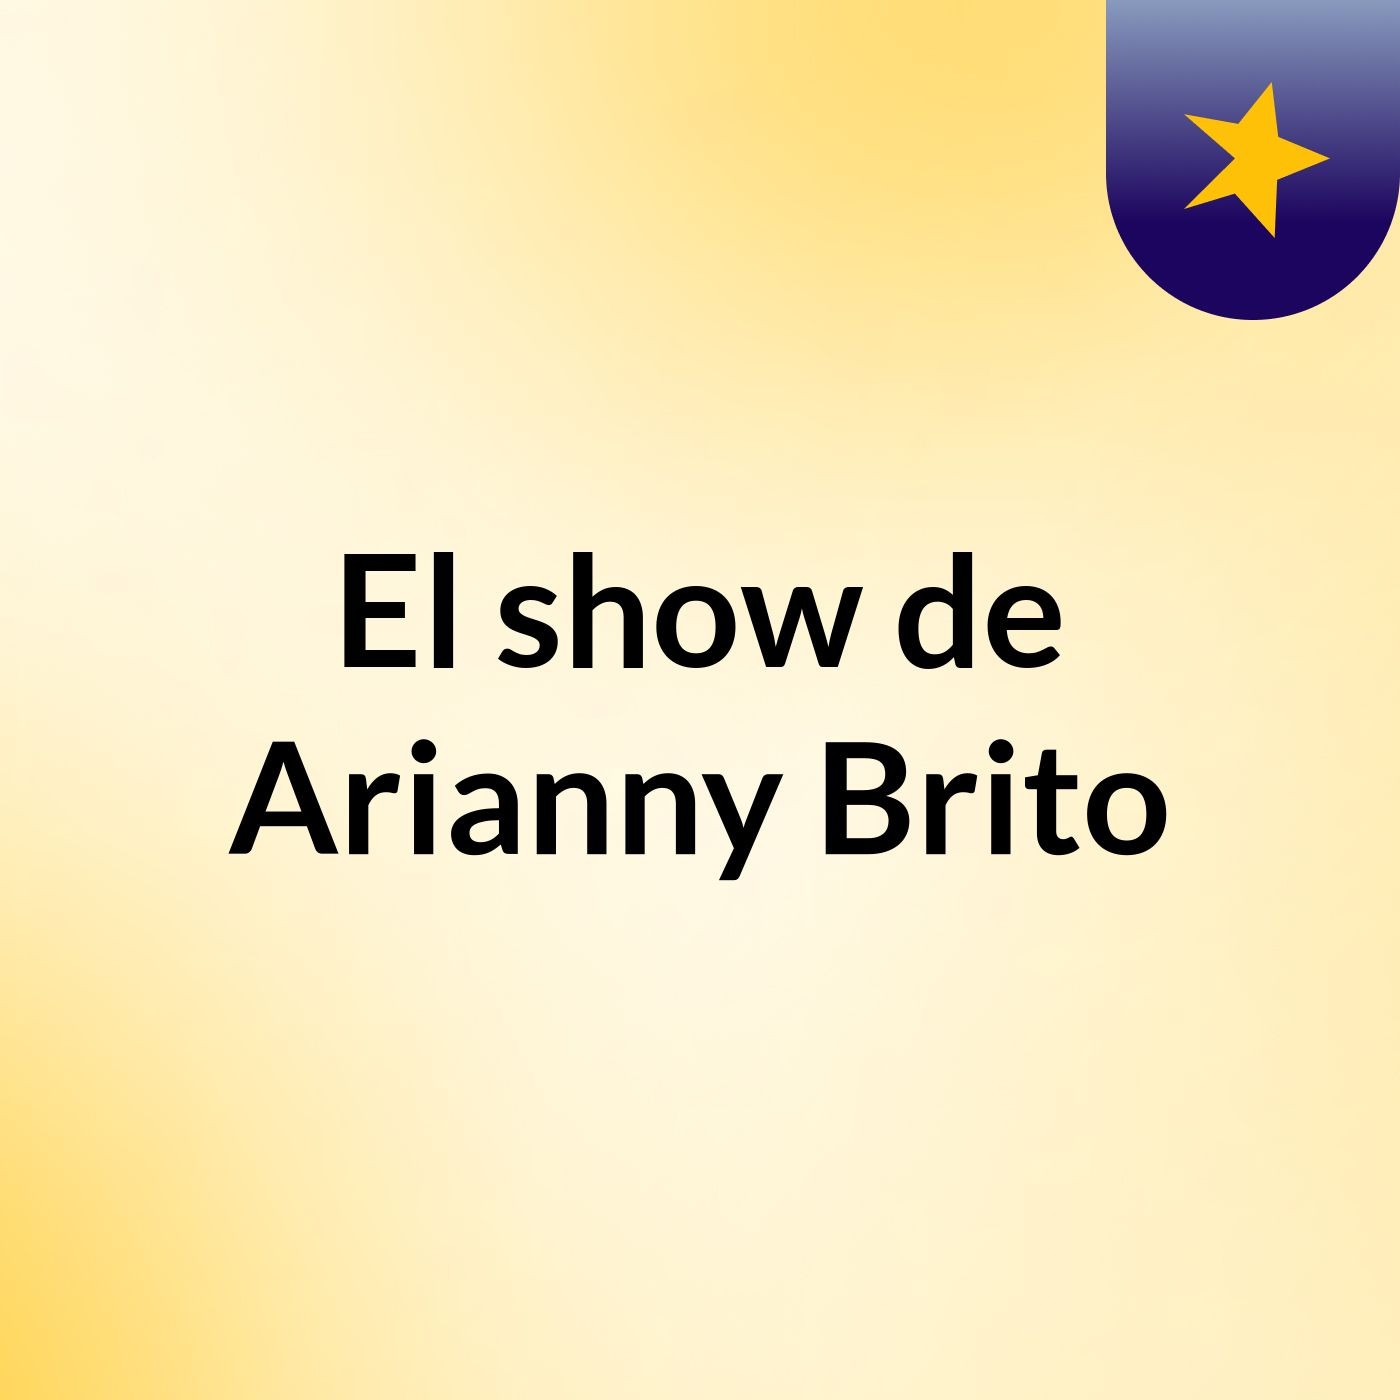 Episodio 1 - El show de Arianny Brito